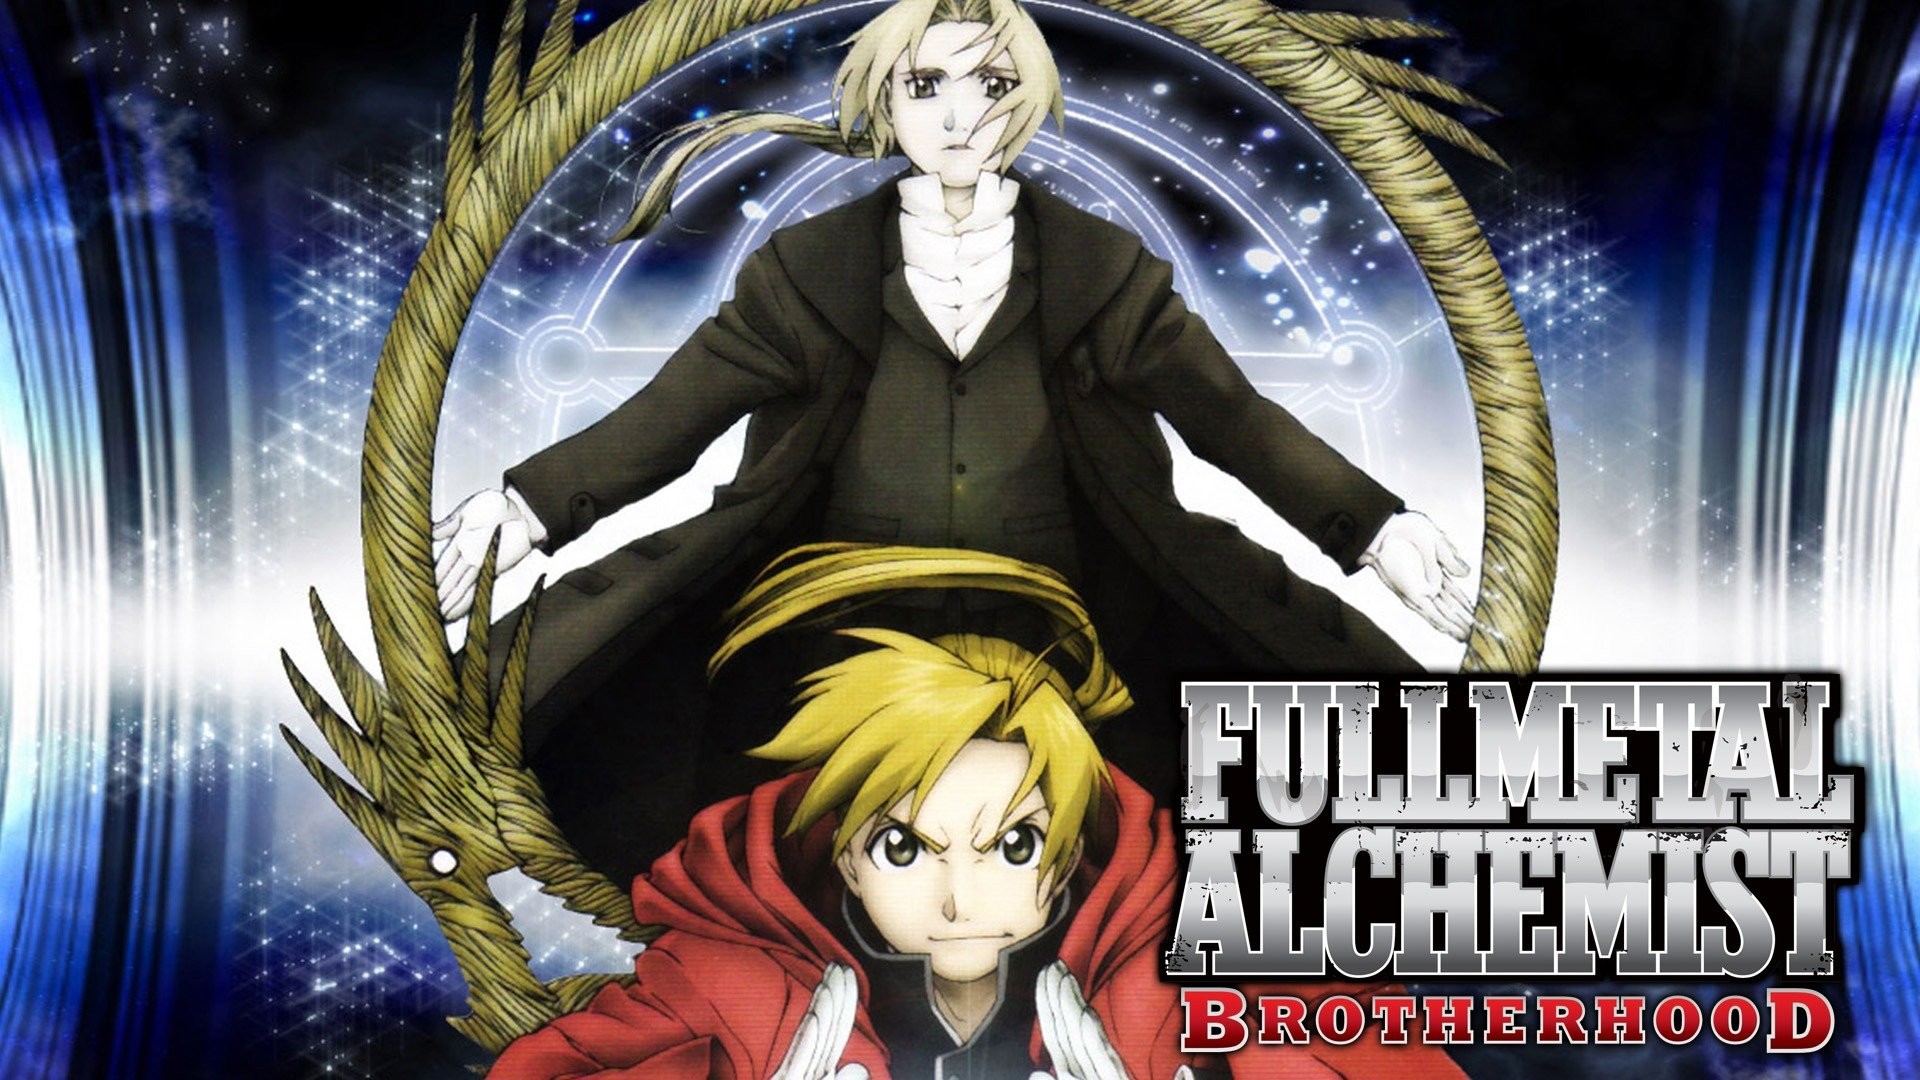 Fullmetal Alchemist Brotherhood Joins Hulu